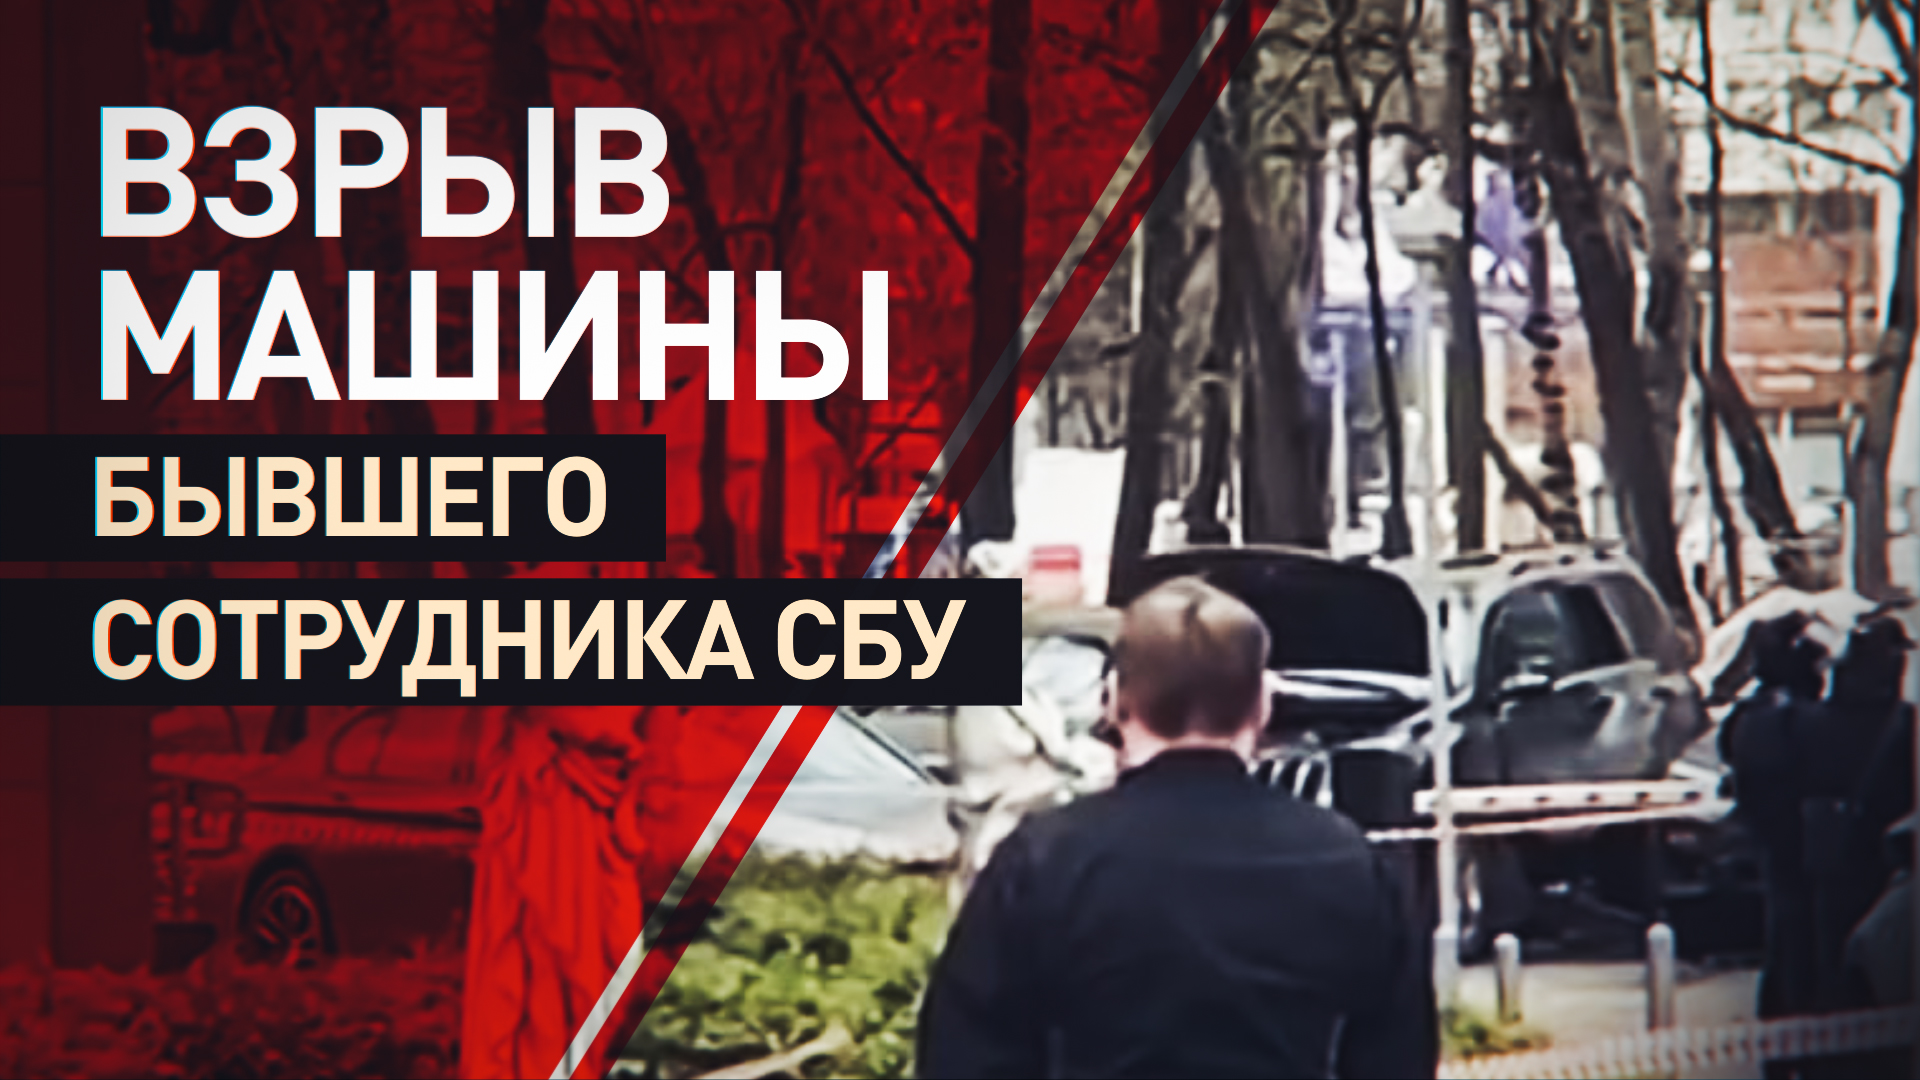 Кадры с места взрыва автомобиля бывшего сотрудника СБУ в Москве